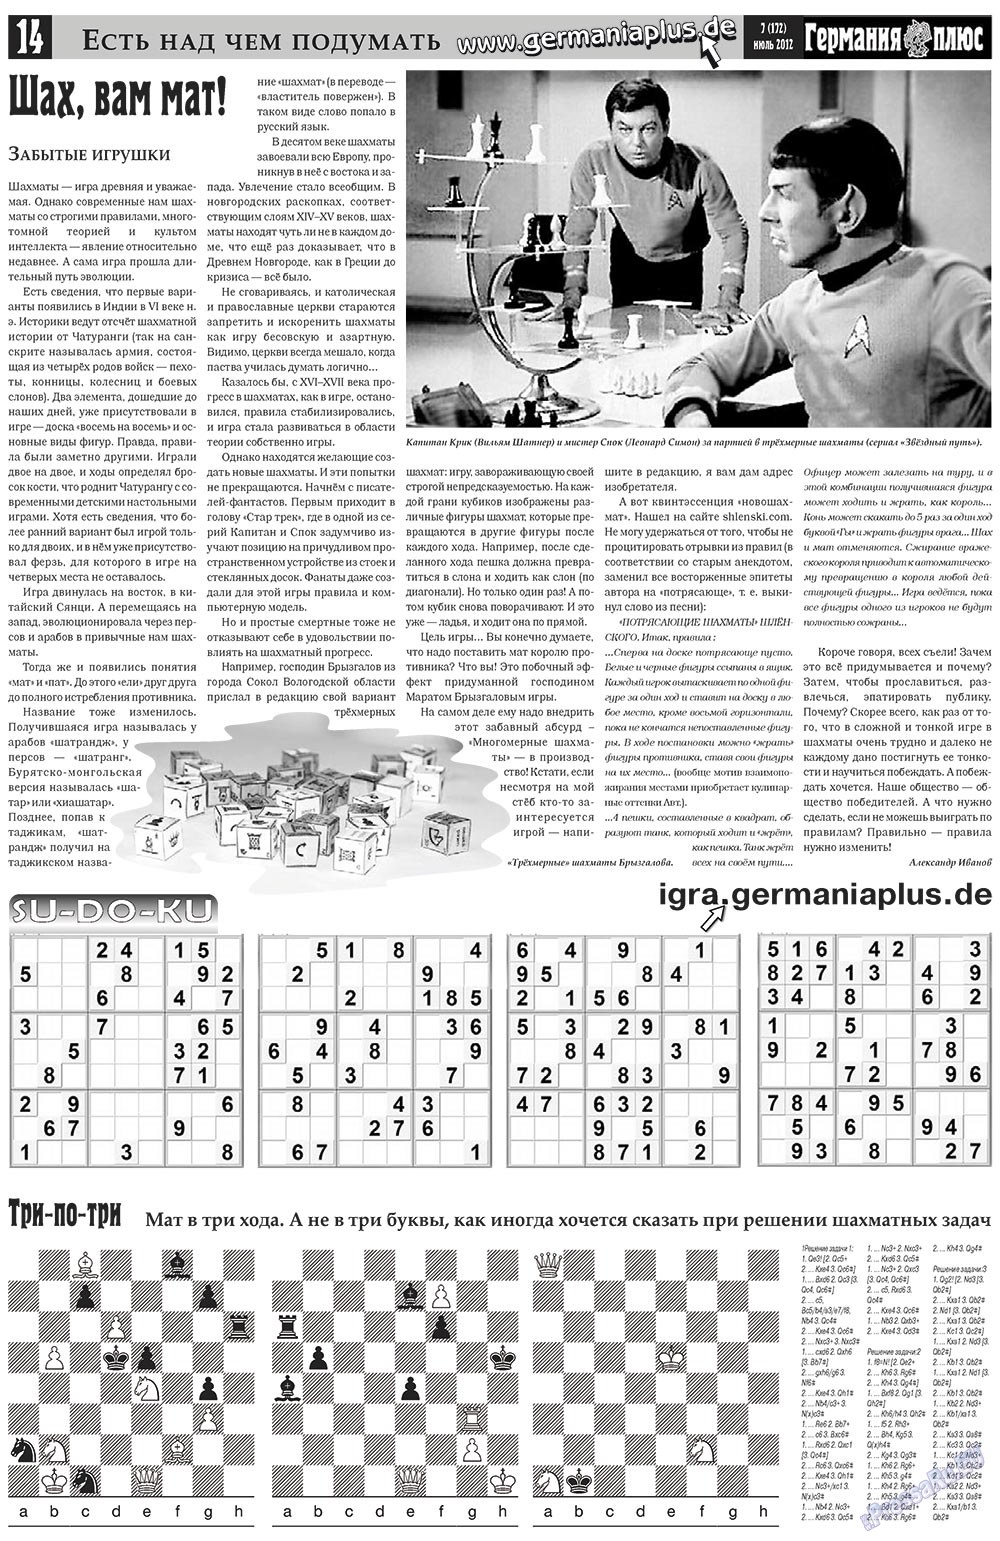 Германия плюс (газета). 2012 год, номер 7, стр. 14